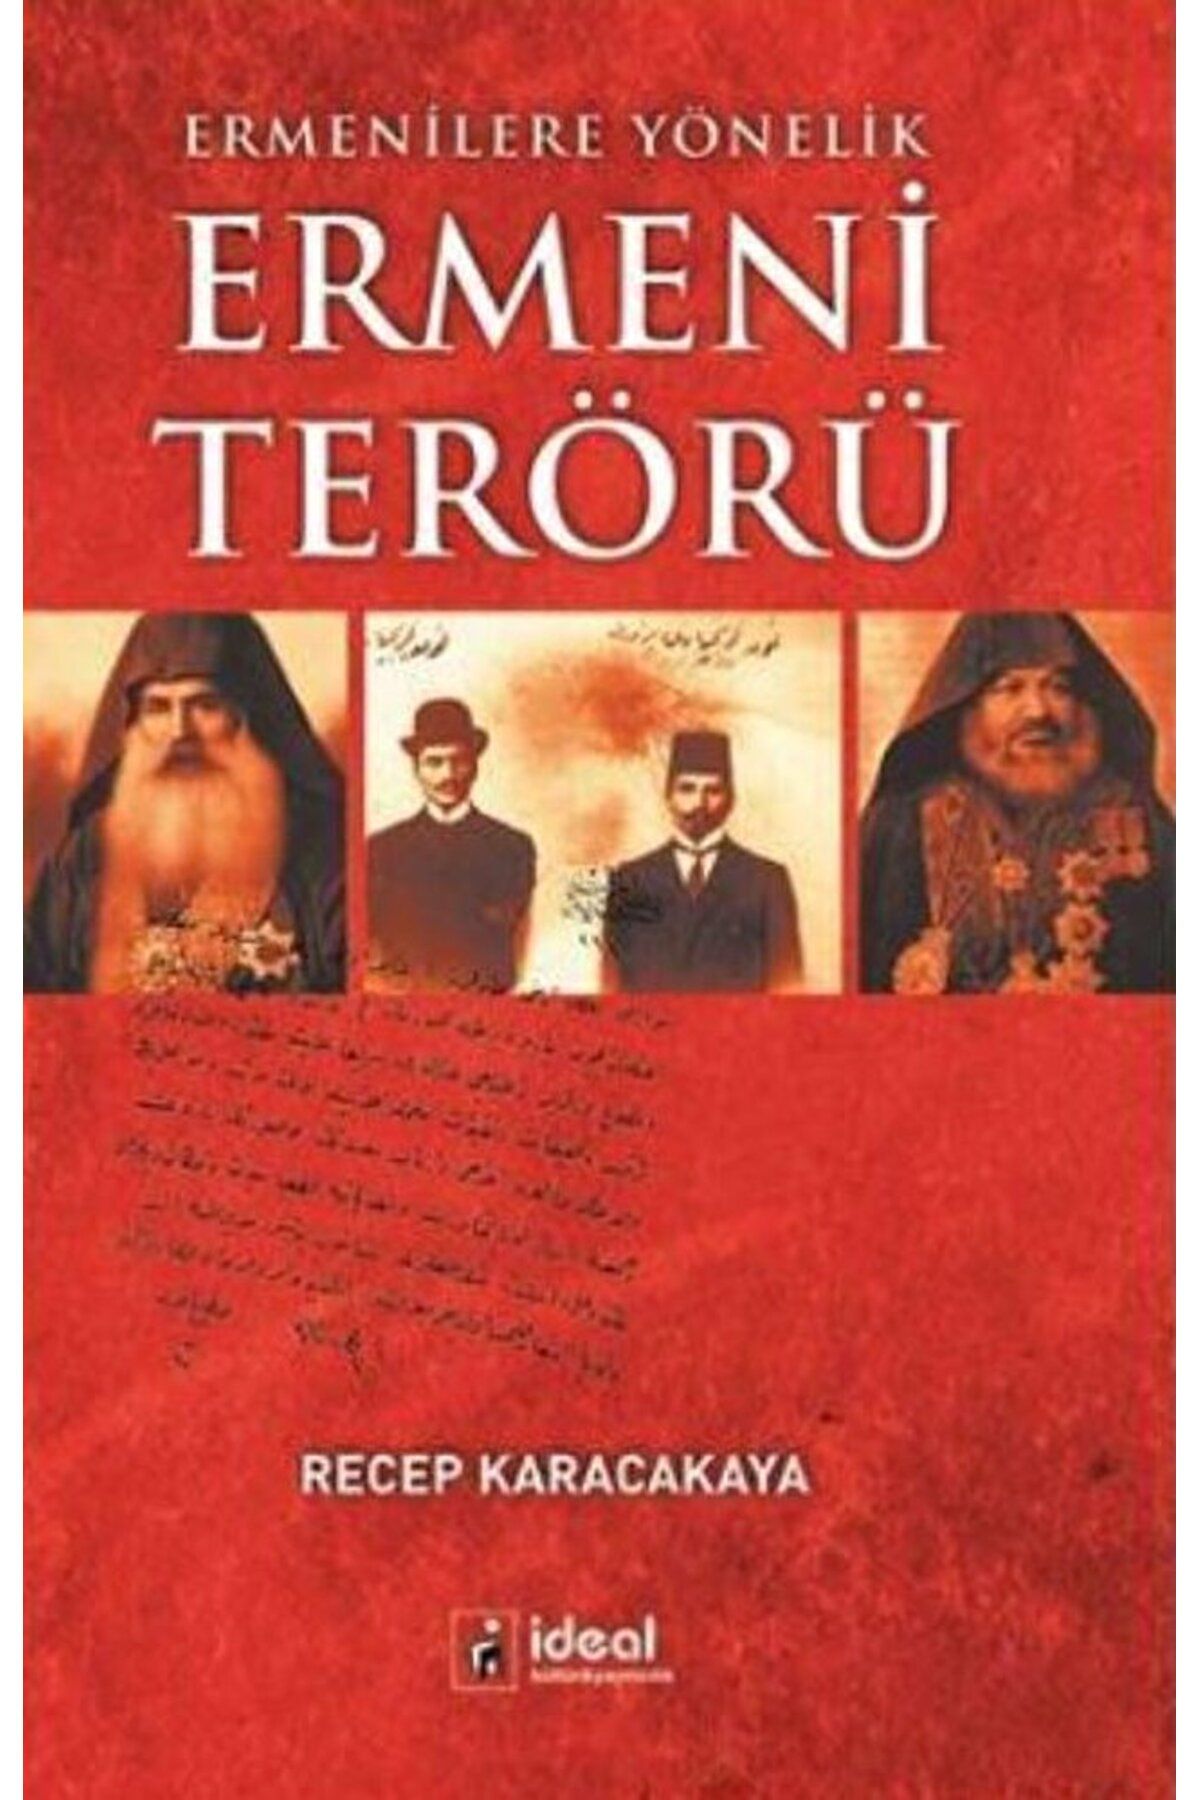 İdeal Kültür Yayıncılık Ermenilere Yönelik Ermeni Terörü